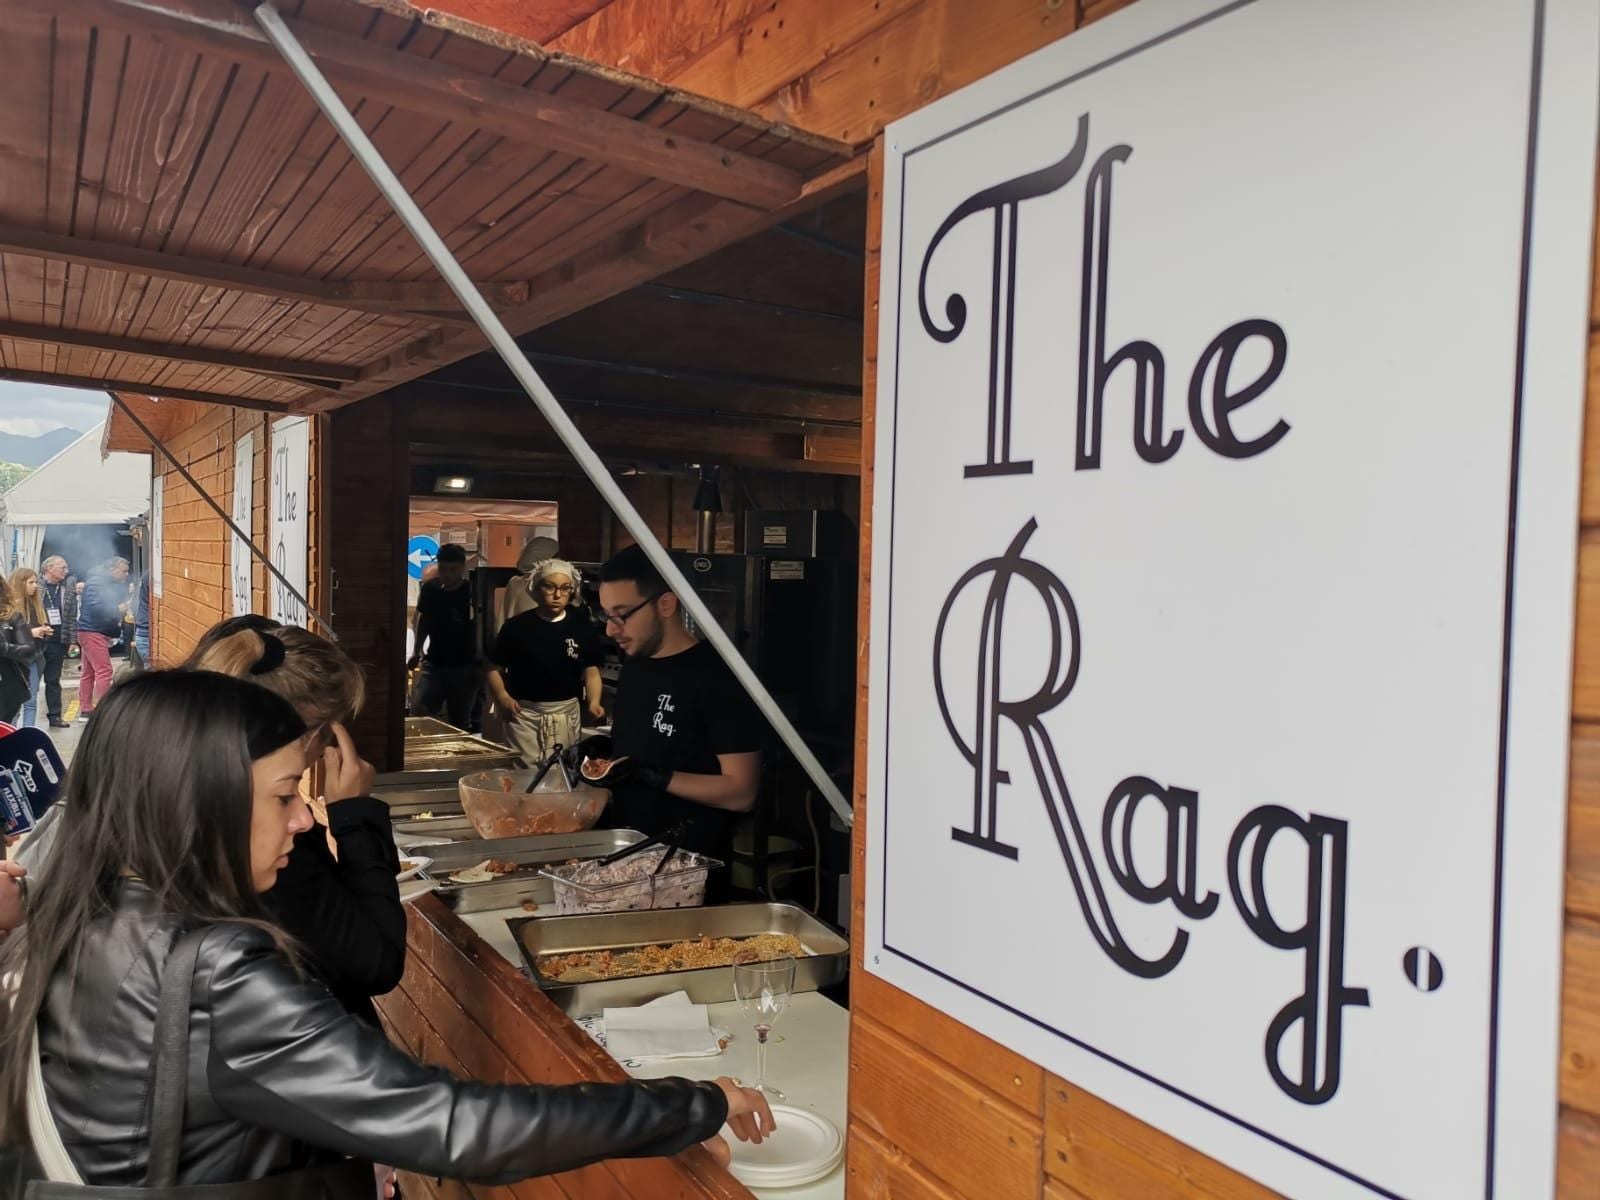 lo stand di The Rag, street food itinerante, in un mmomento di lavoro